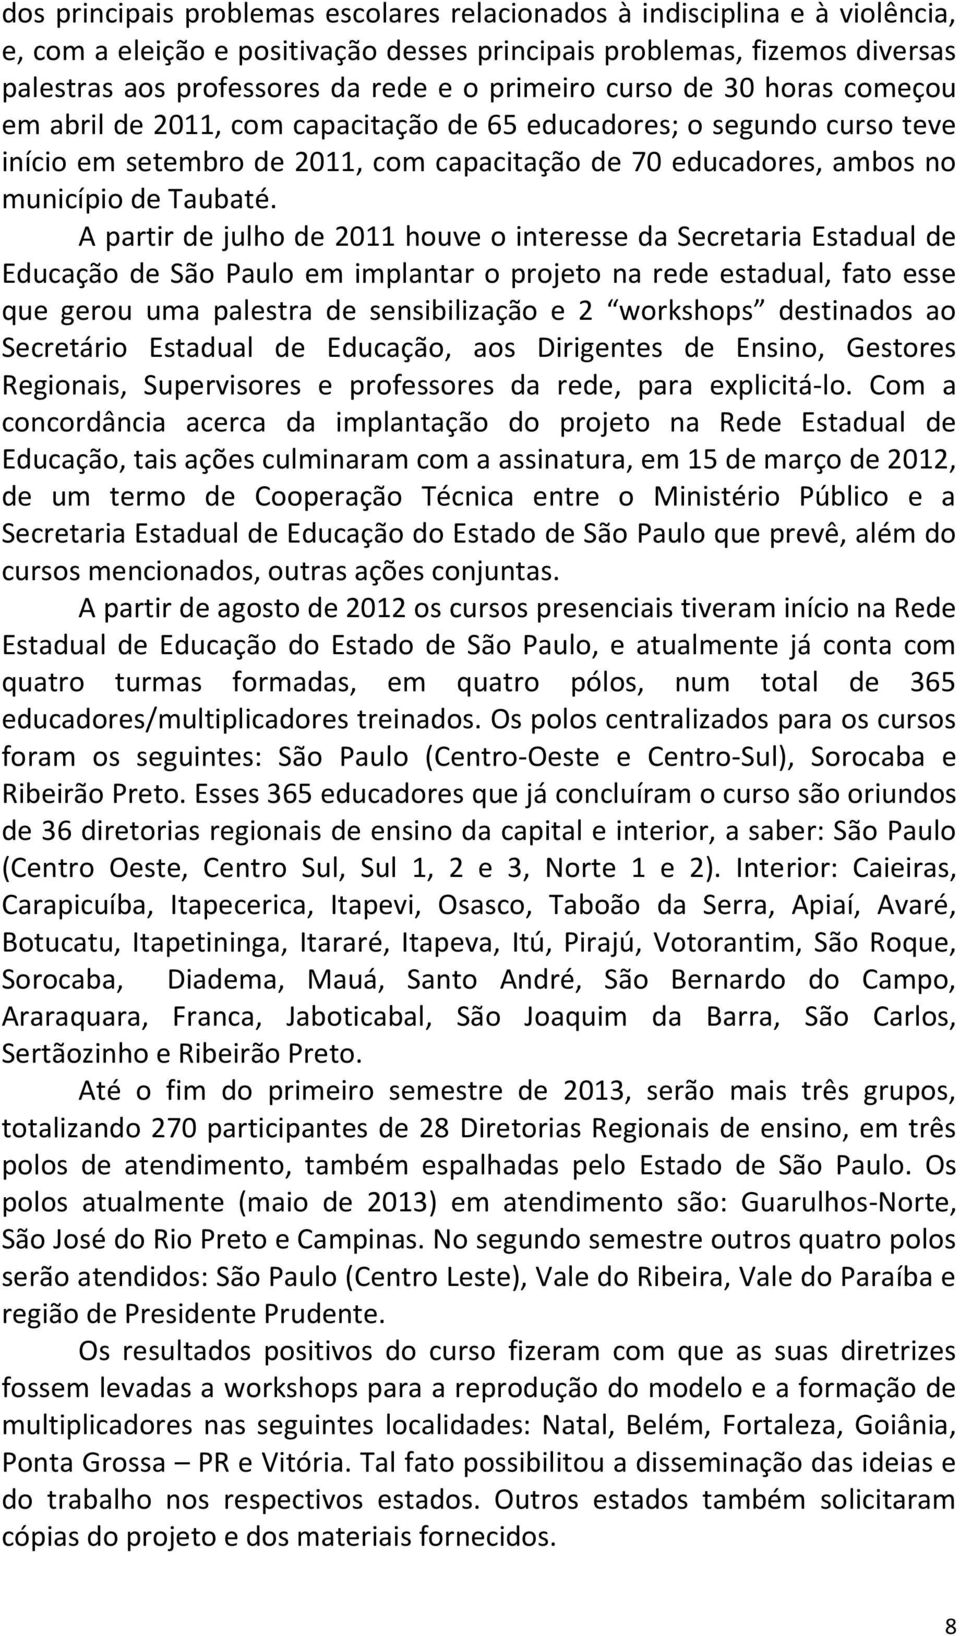 A partir de julho de 2011 houve o interesse da Secretaria Estadual de Educação de São Paulo em implantar o projeto na rede estadual, fato esse que gerou uma palestra de sensibilização e 2 workshops